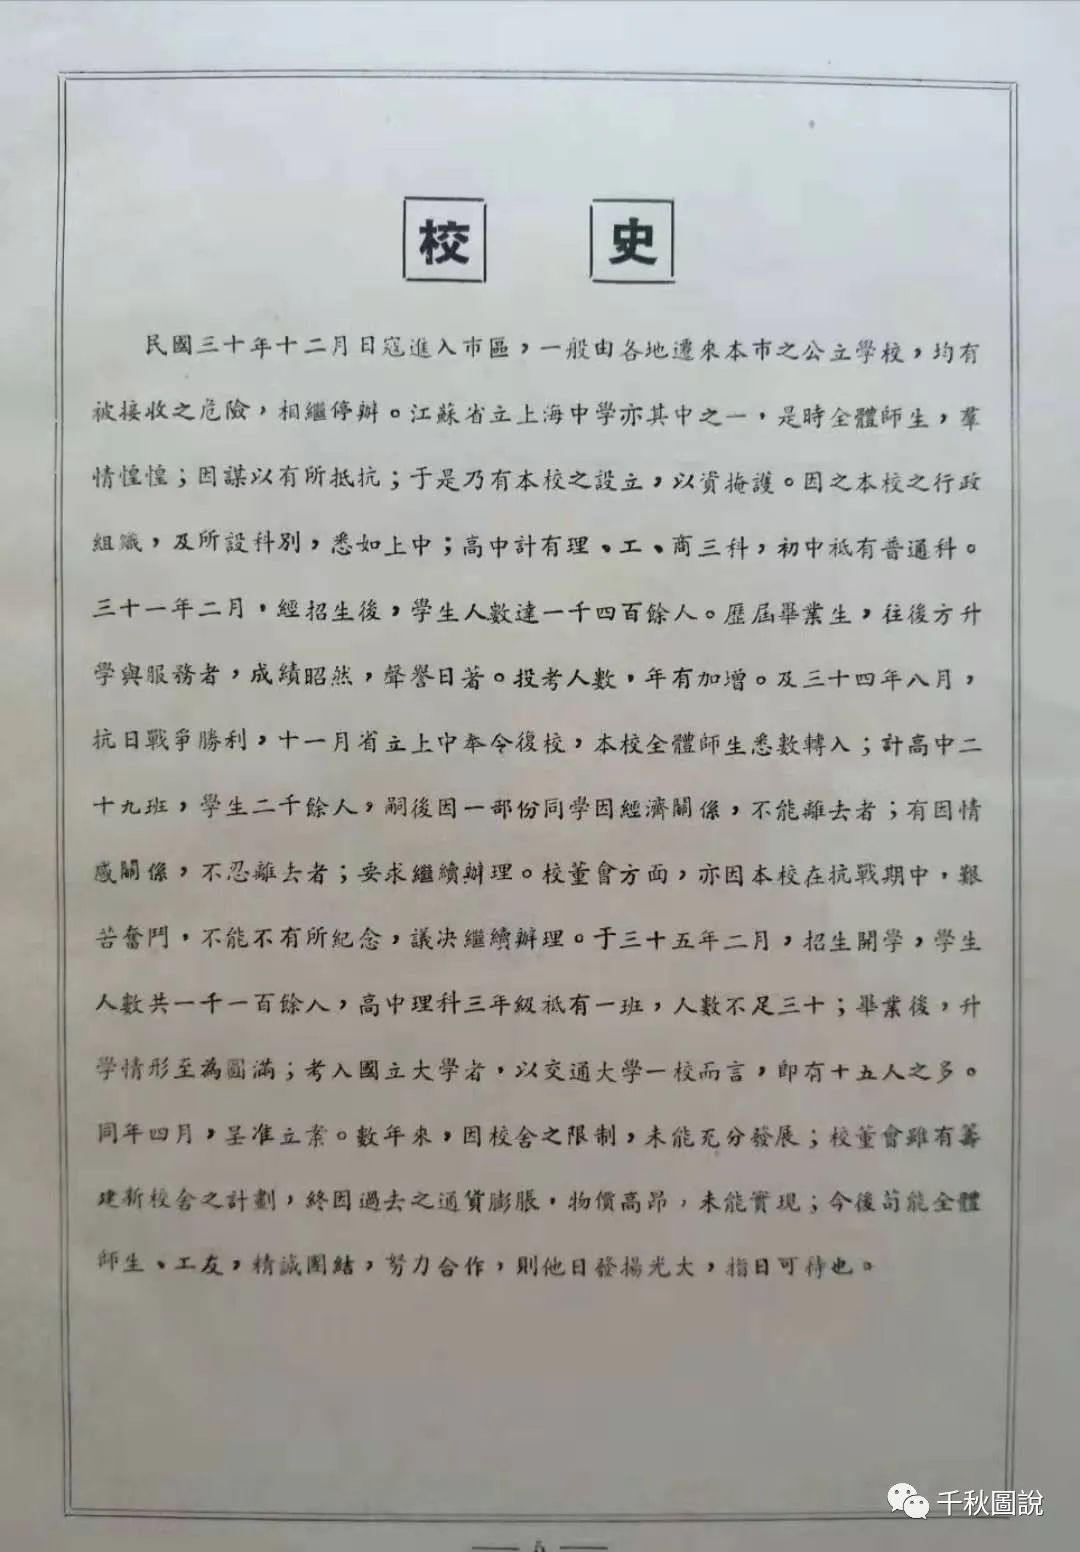 沪新中学一九四九年毕业纪念刊 千秋圖說 微信公众号文章阅读 Wemp